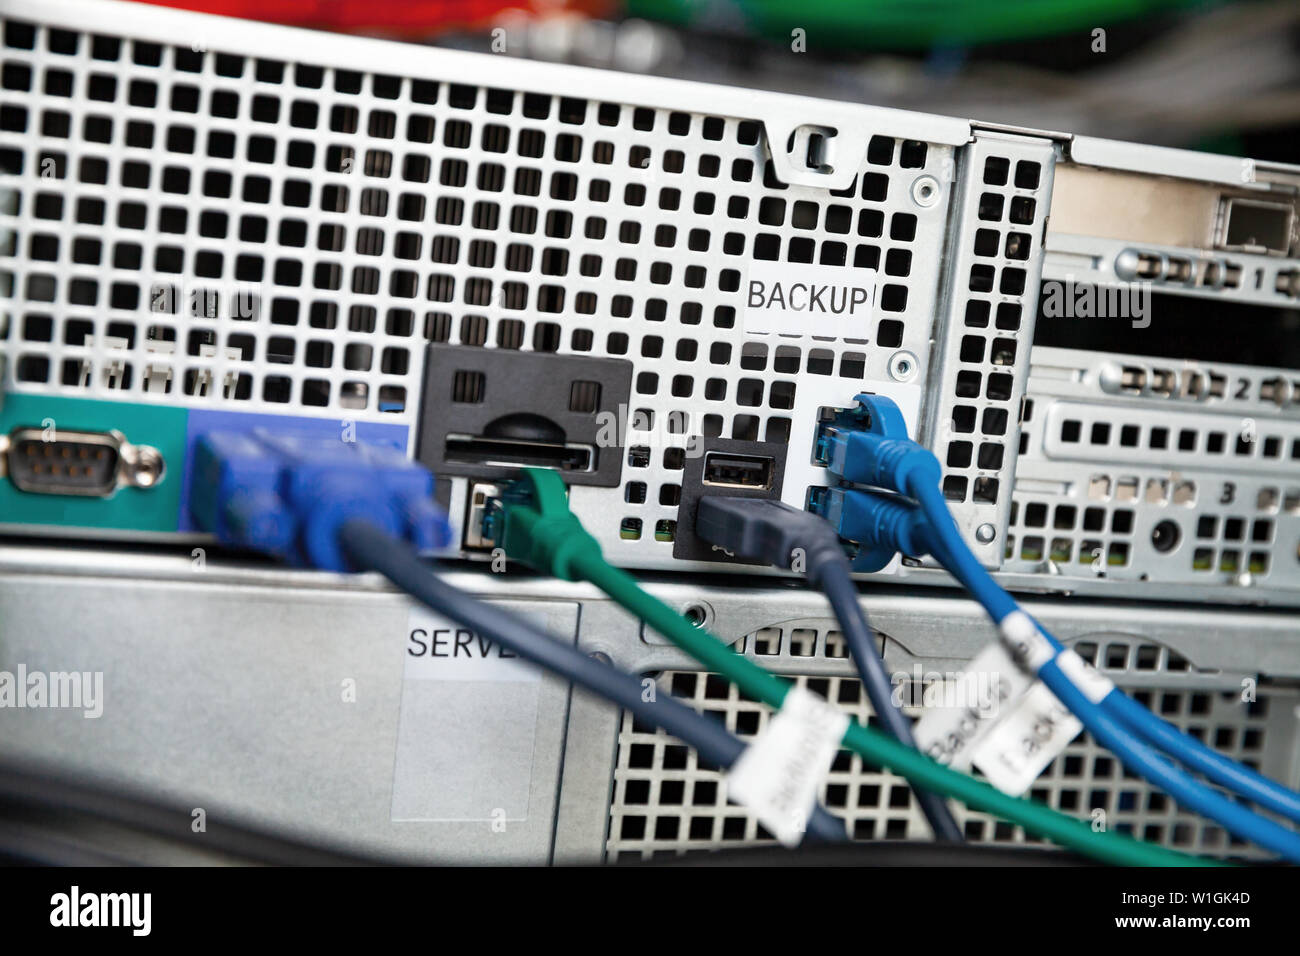 Lato posteriore di un back up server station con i cavi di rete Foto Stock